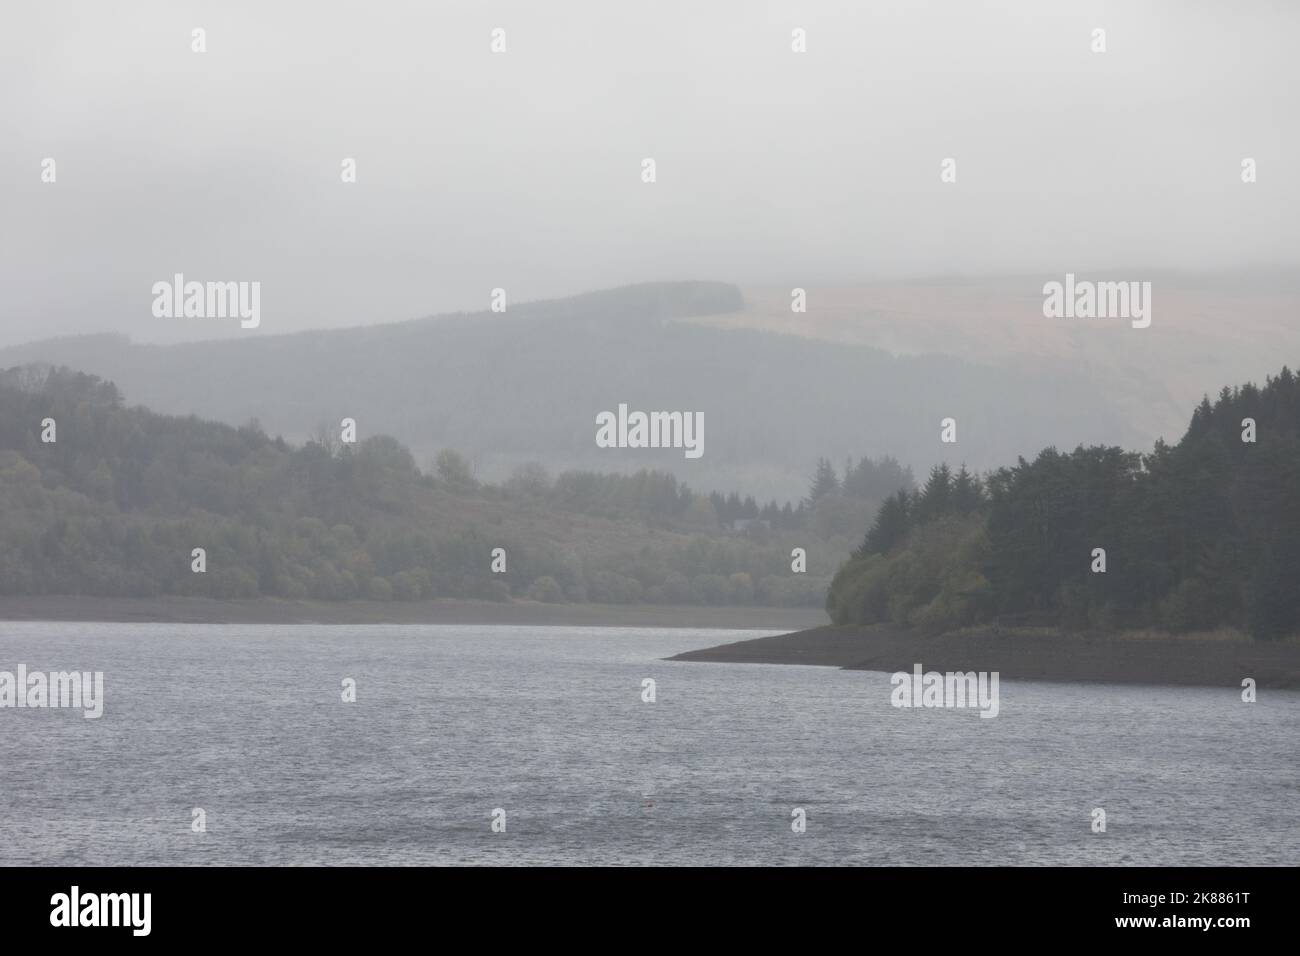 Pontsticill Reservoir, Galles del Sud, Regno Unito. 21 ottobre '22. Tempo nel Regno Unito: Pioggia intensa questo pomeriggio. Credit: Andrew Bartlett/Alamy Live News. Foto Stock